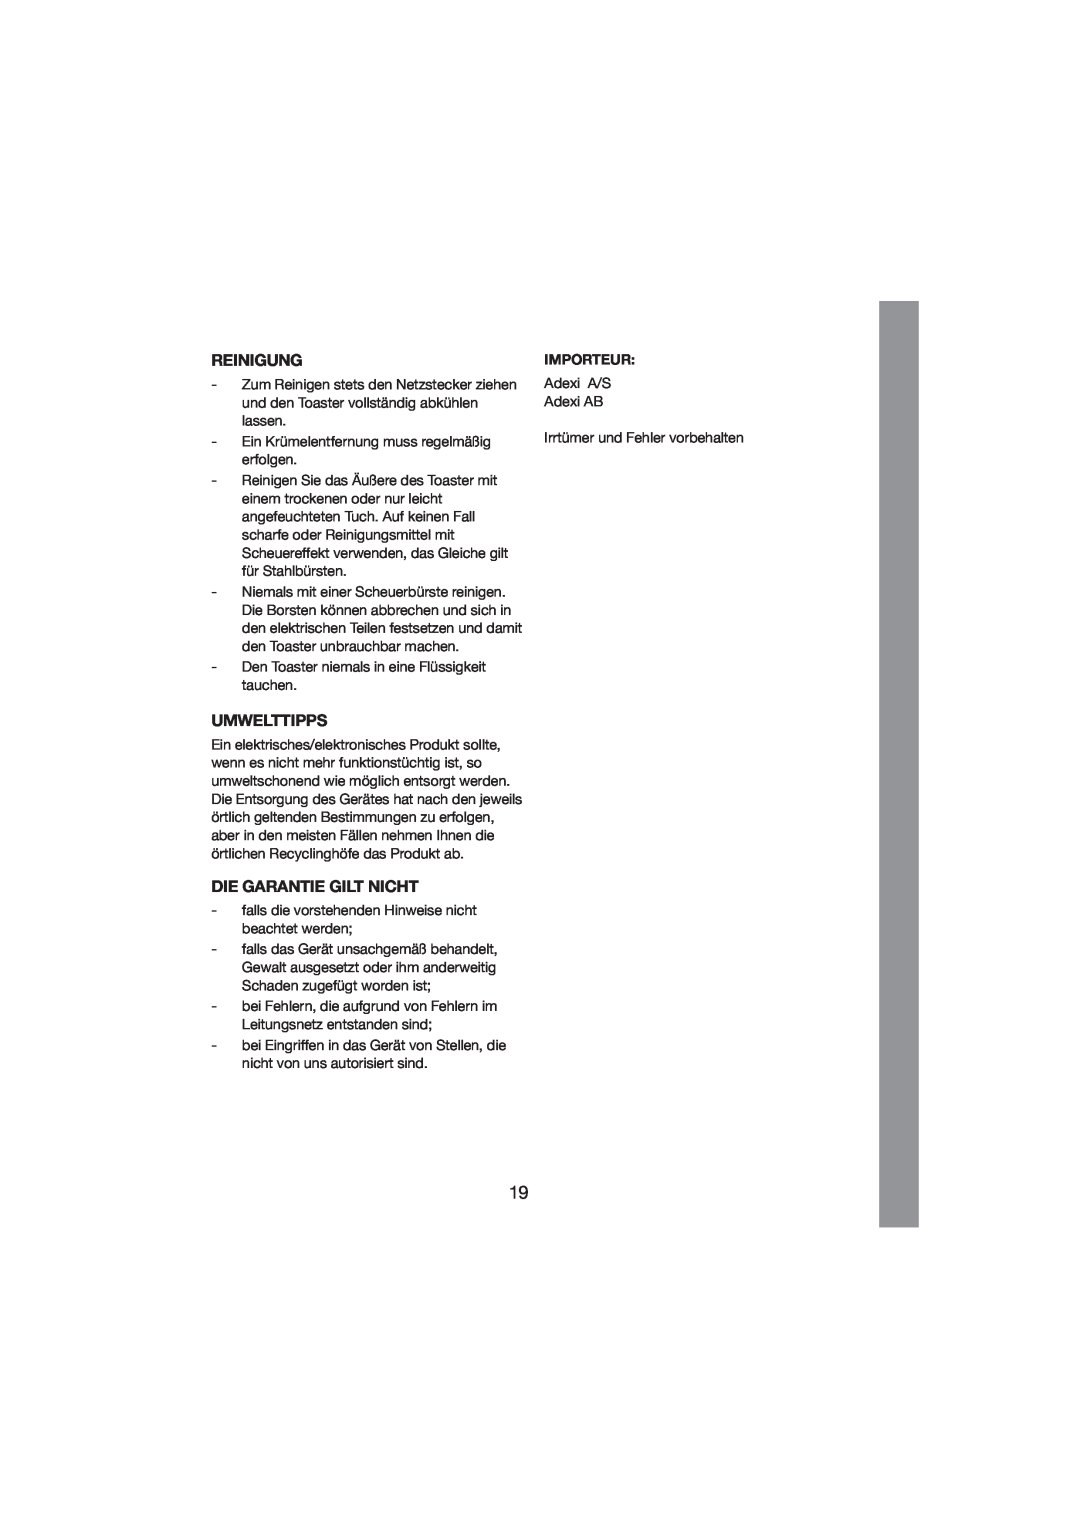 Melissa 243-012 manual Reinigung, Umwelttipps, Die Garantie Gilt Nicht, Importeur 